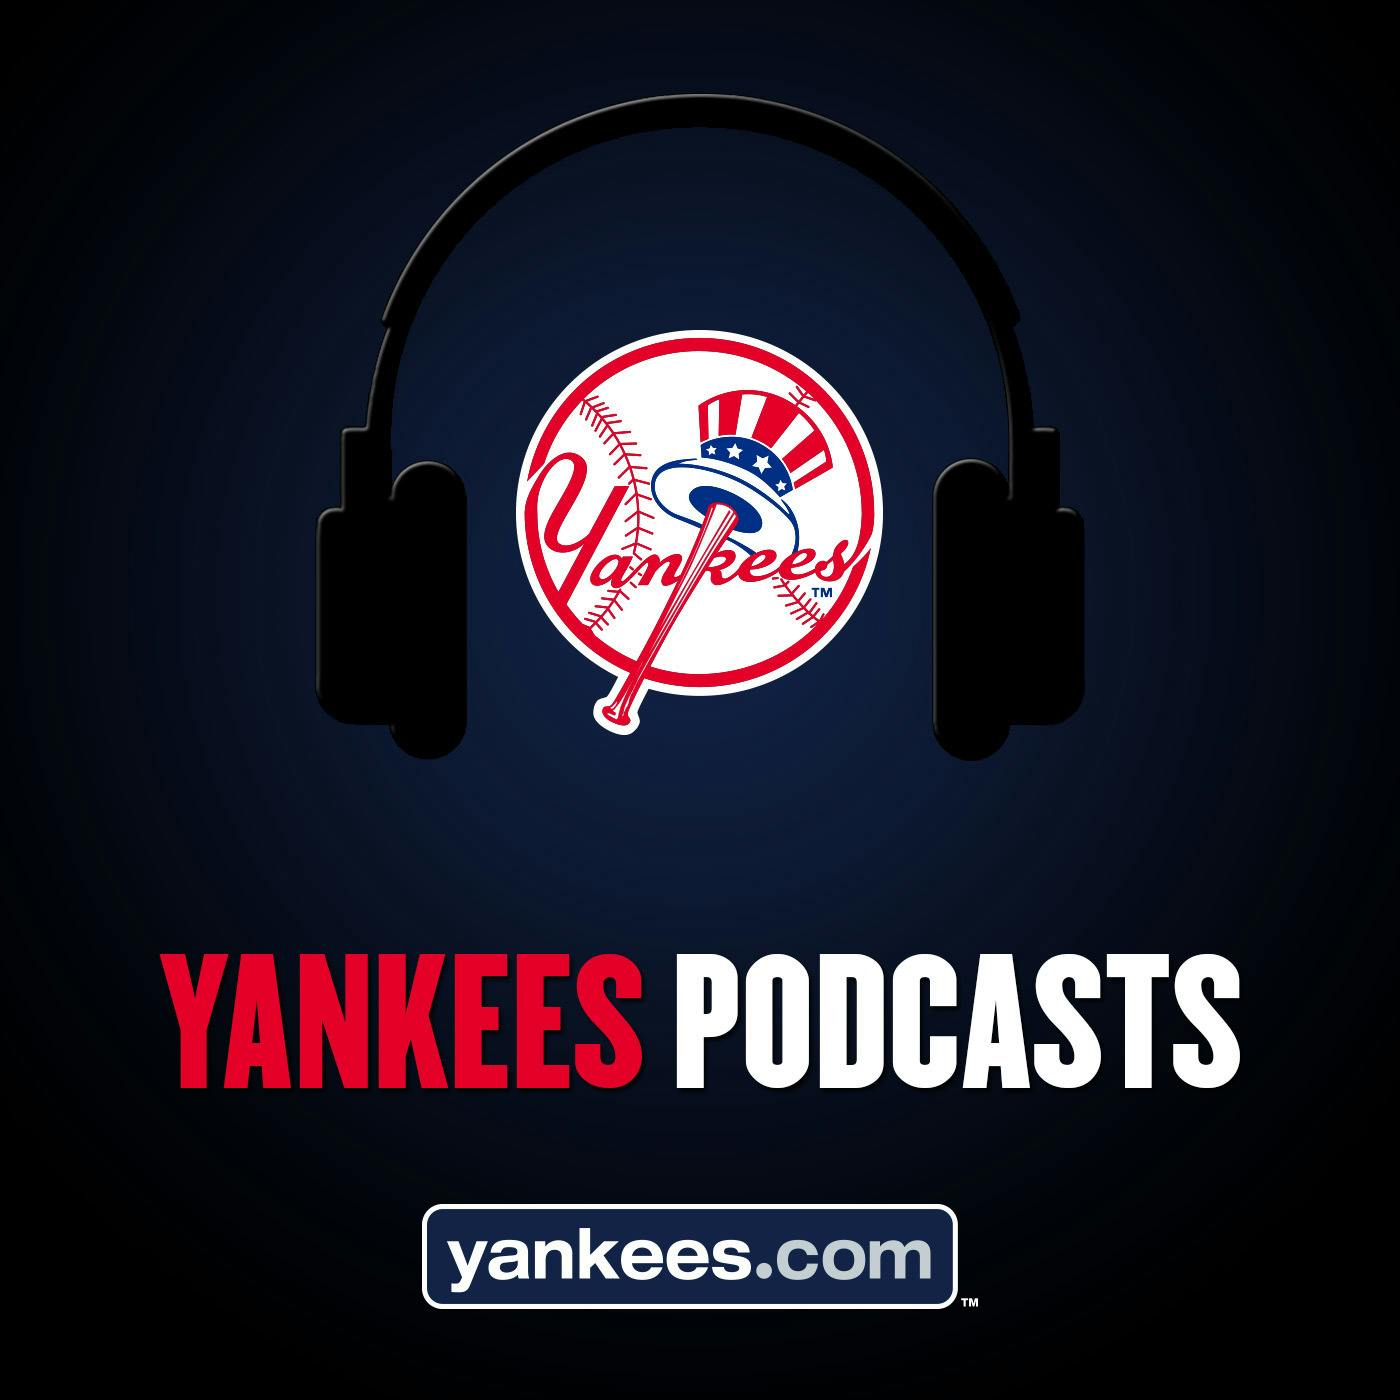 Yankees Magazine Podcast: Episode 16